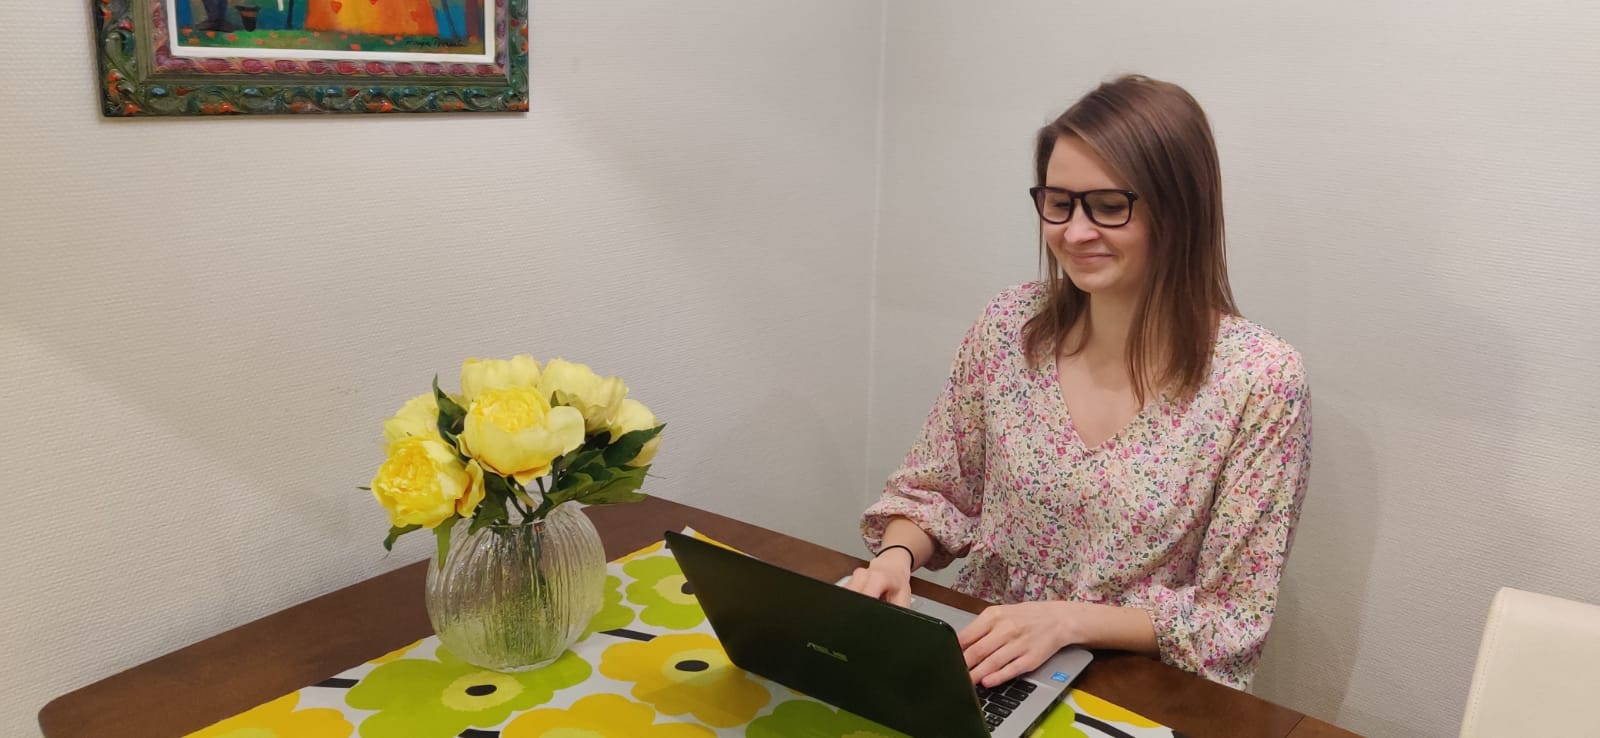 Nainen istuu tietokoneen ääressä ja pöydällä on keltaisia kukkasia.